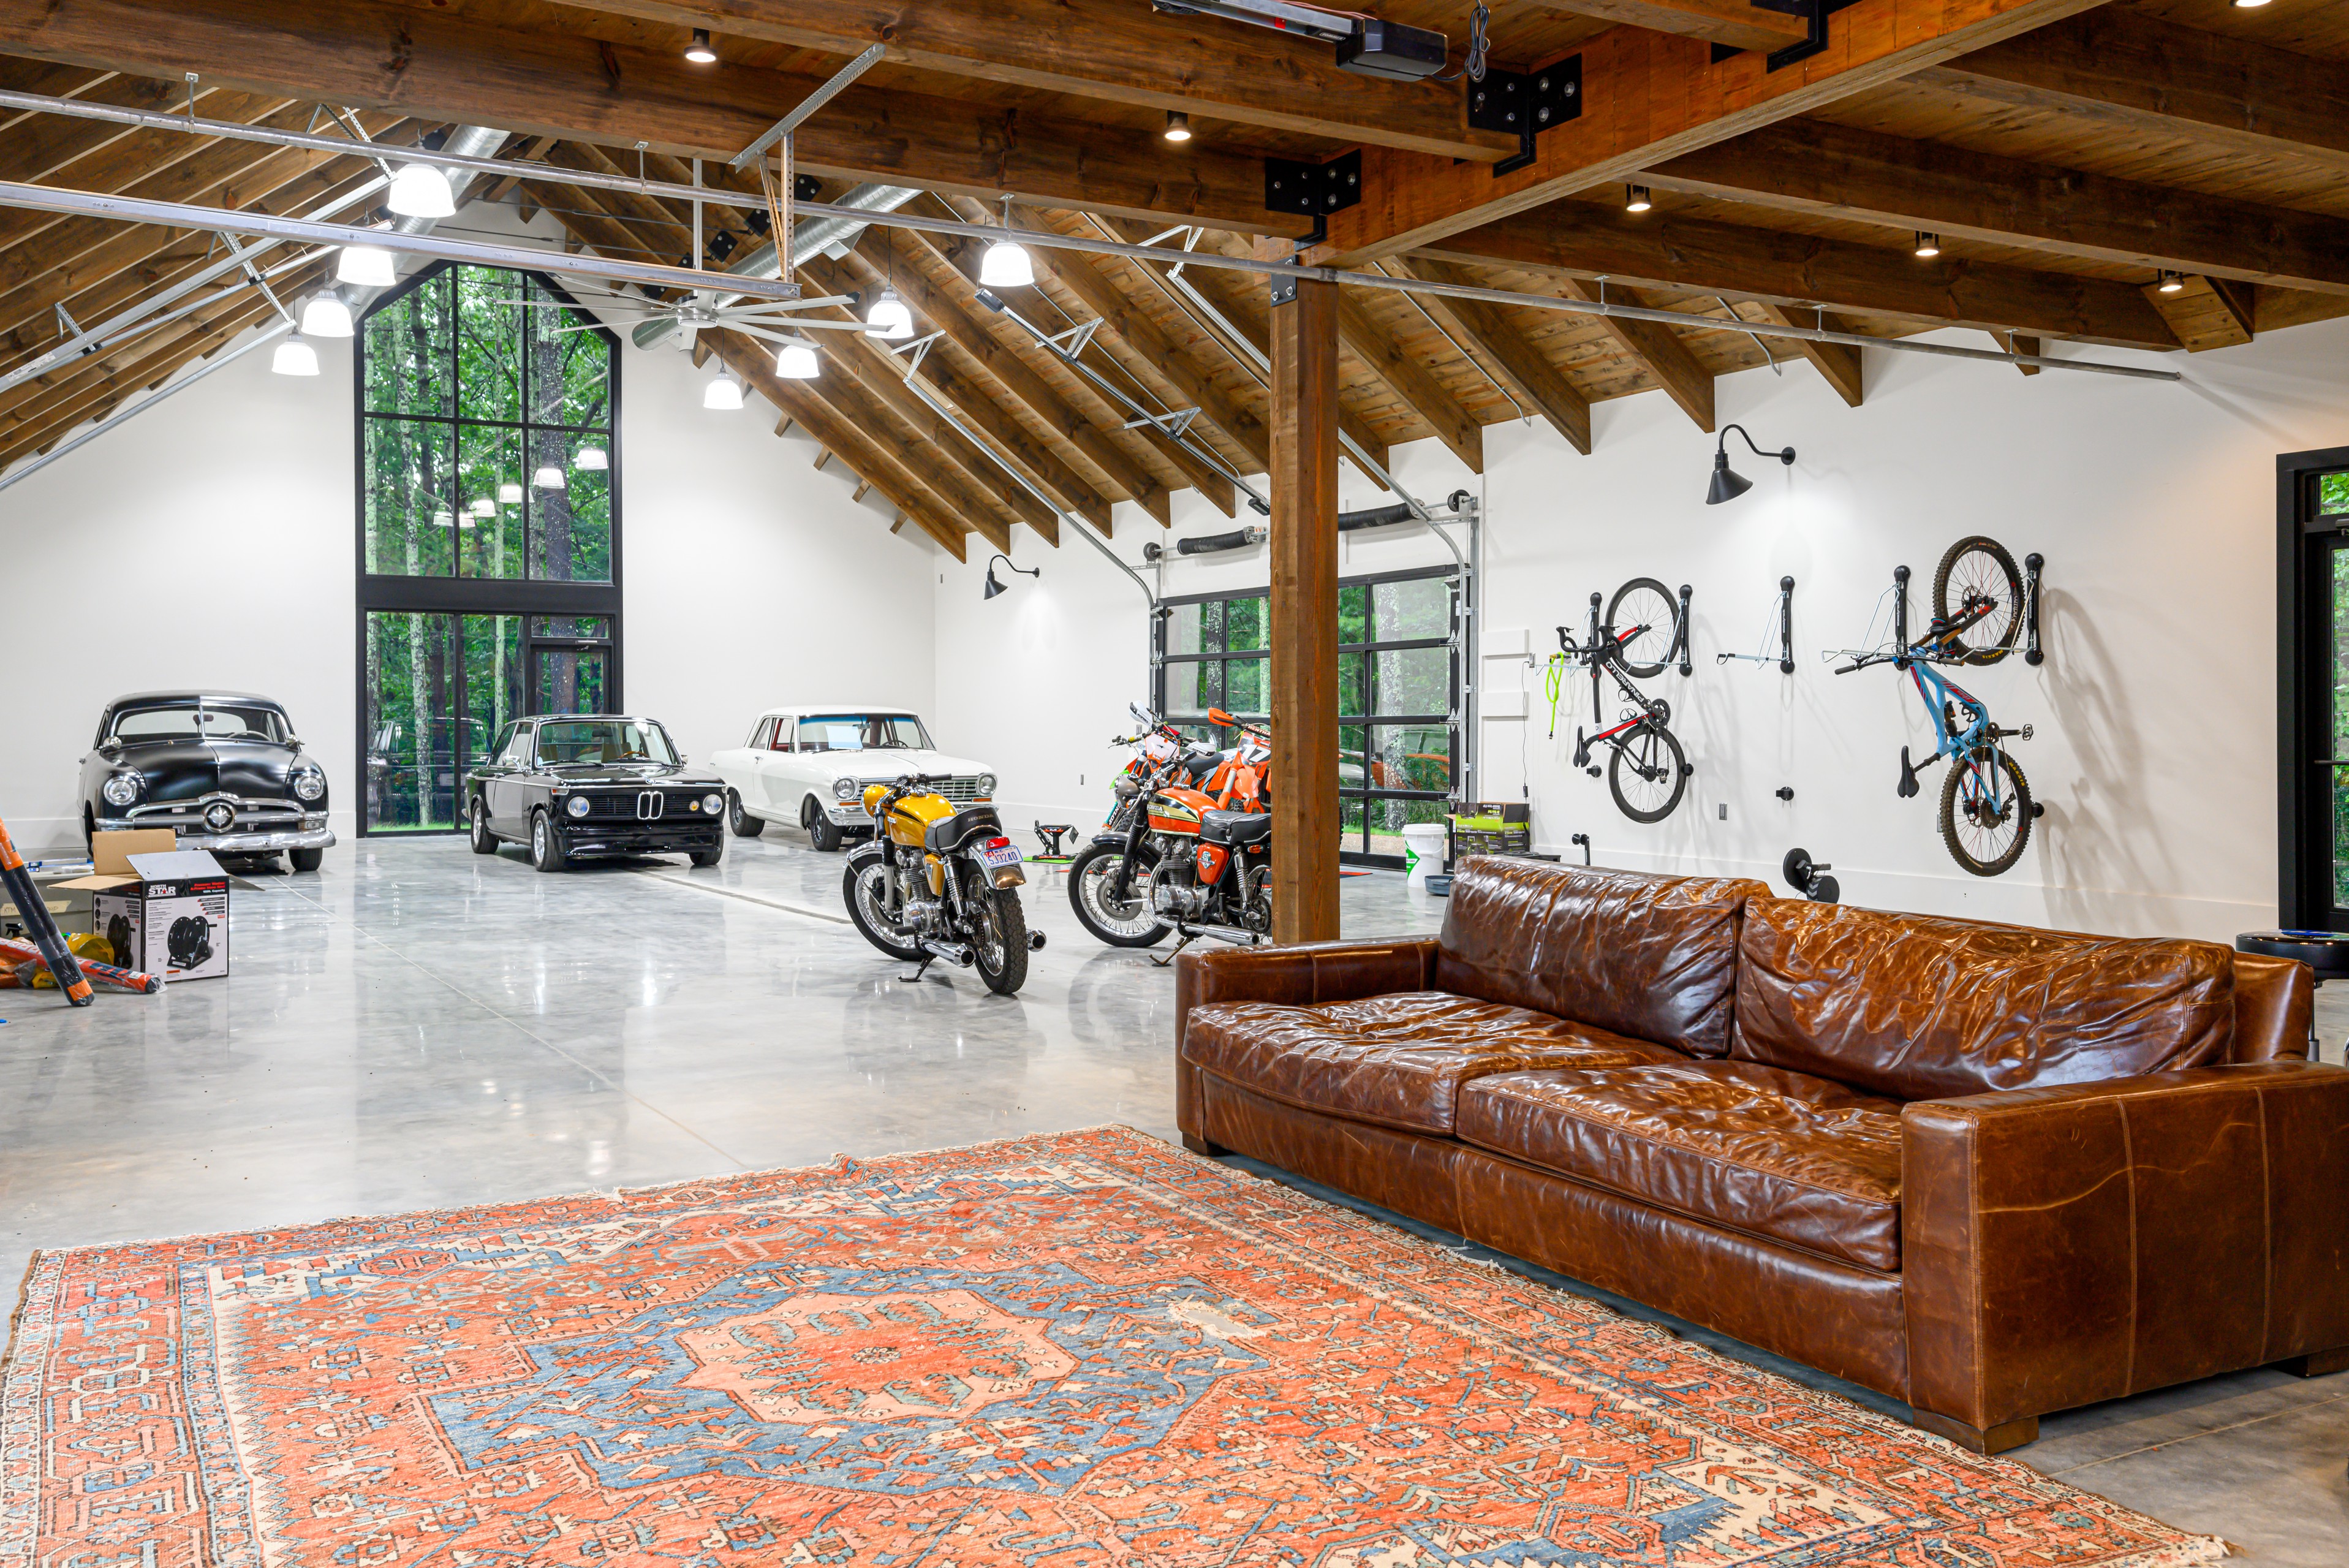 garage with loft ideas